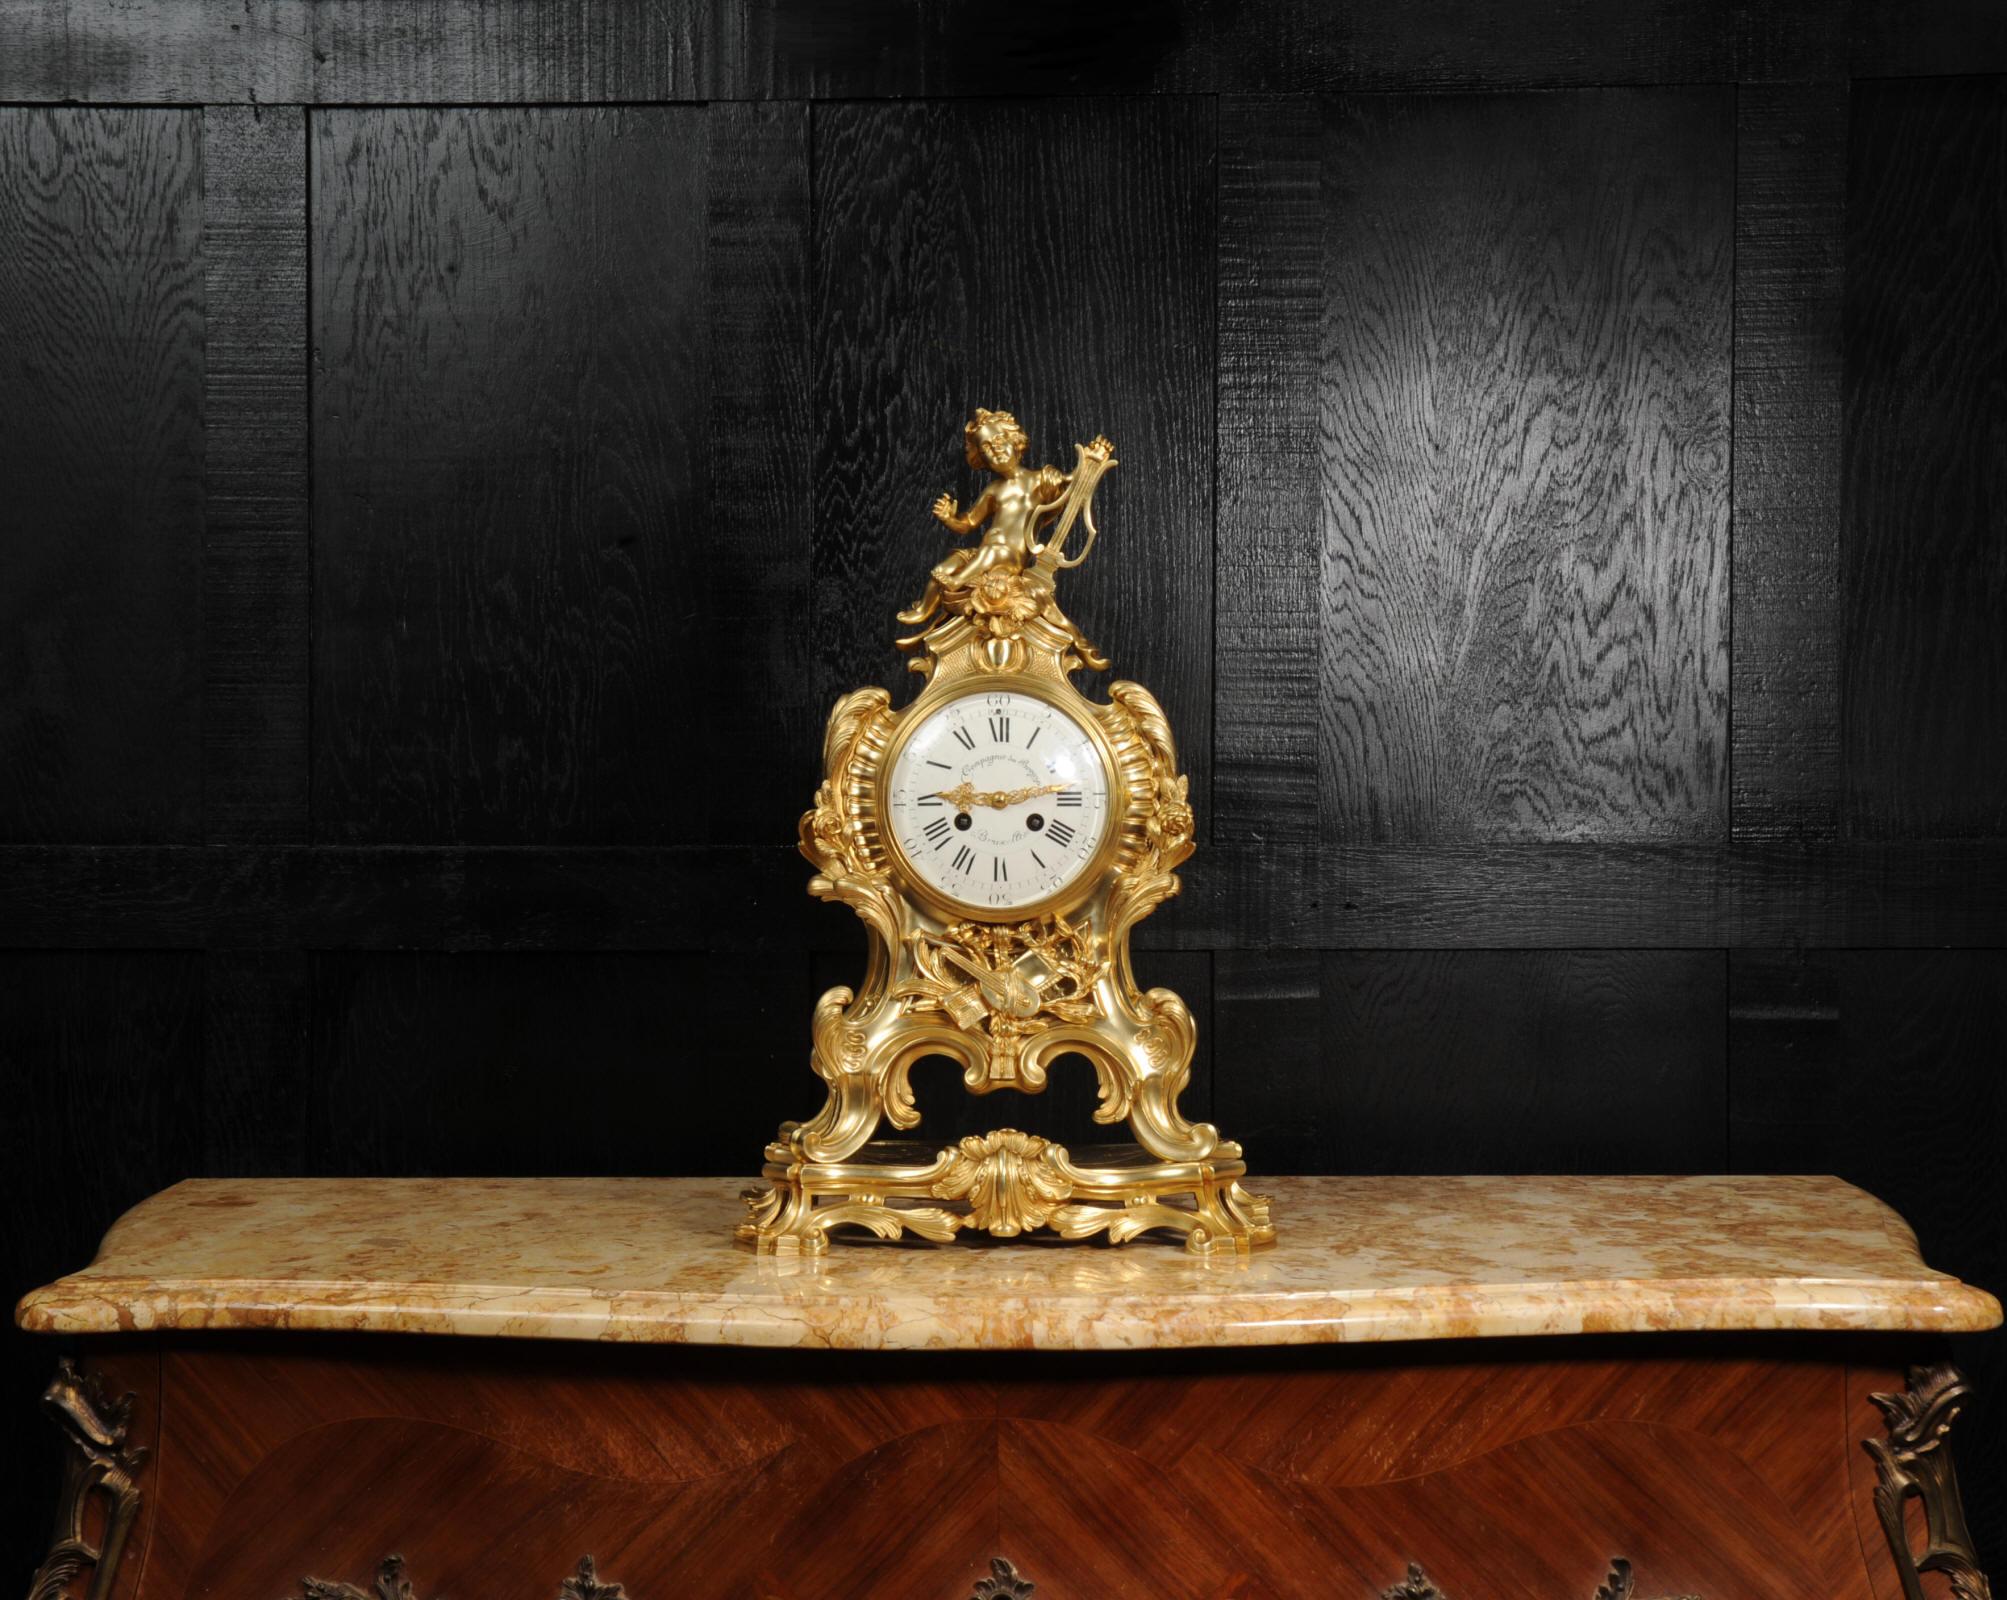 Une superbe et substantielle horloge en bronze doré d'après un dessin du fondeur de bronze du 18ème siècle Robert Osmond et fabriquée par la célèbre Compagnie des Bronze de Bruxelles. De style Louis XV, cette élégante boîte à pans coupés est formée